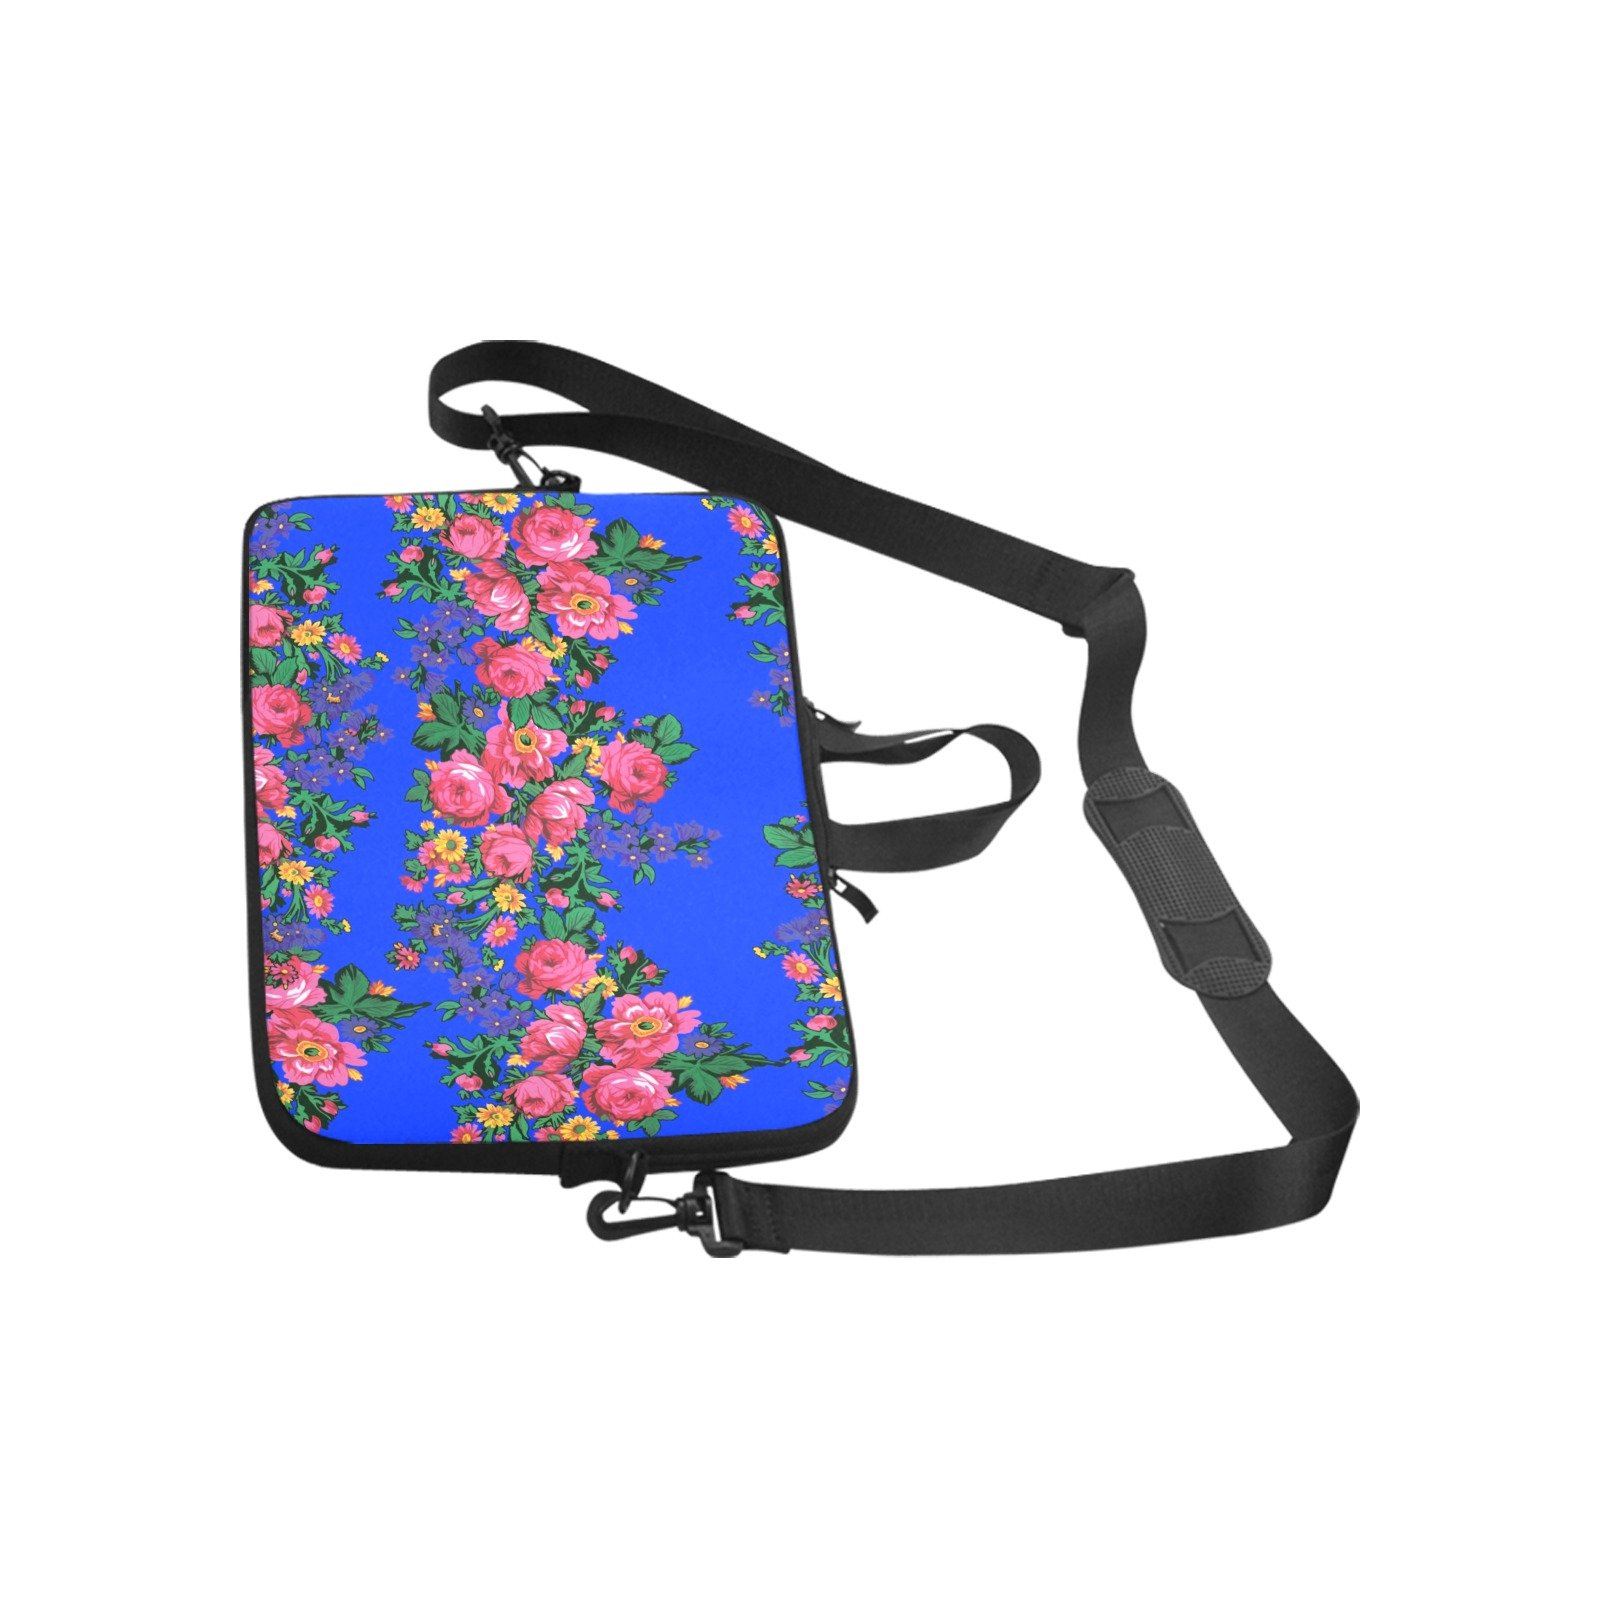 Kokum's Revenge Royal Laptop Handbags 14" bag e-joyer 